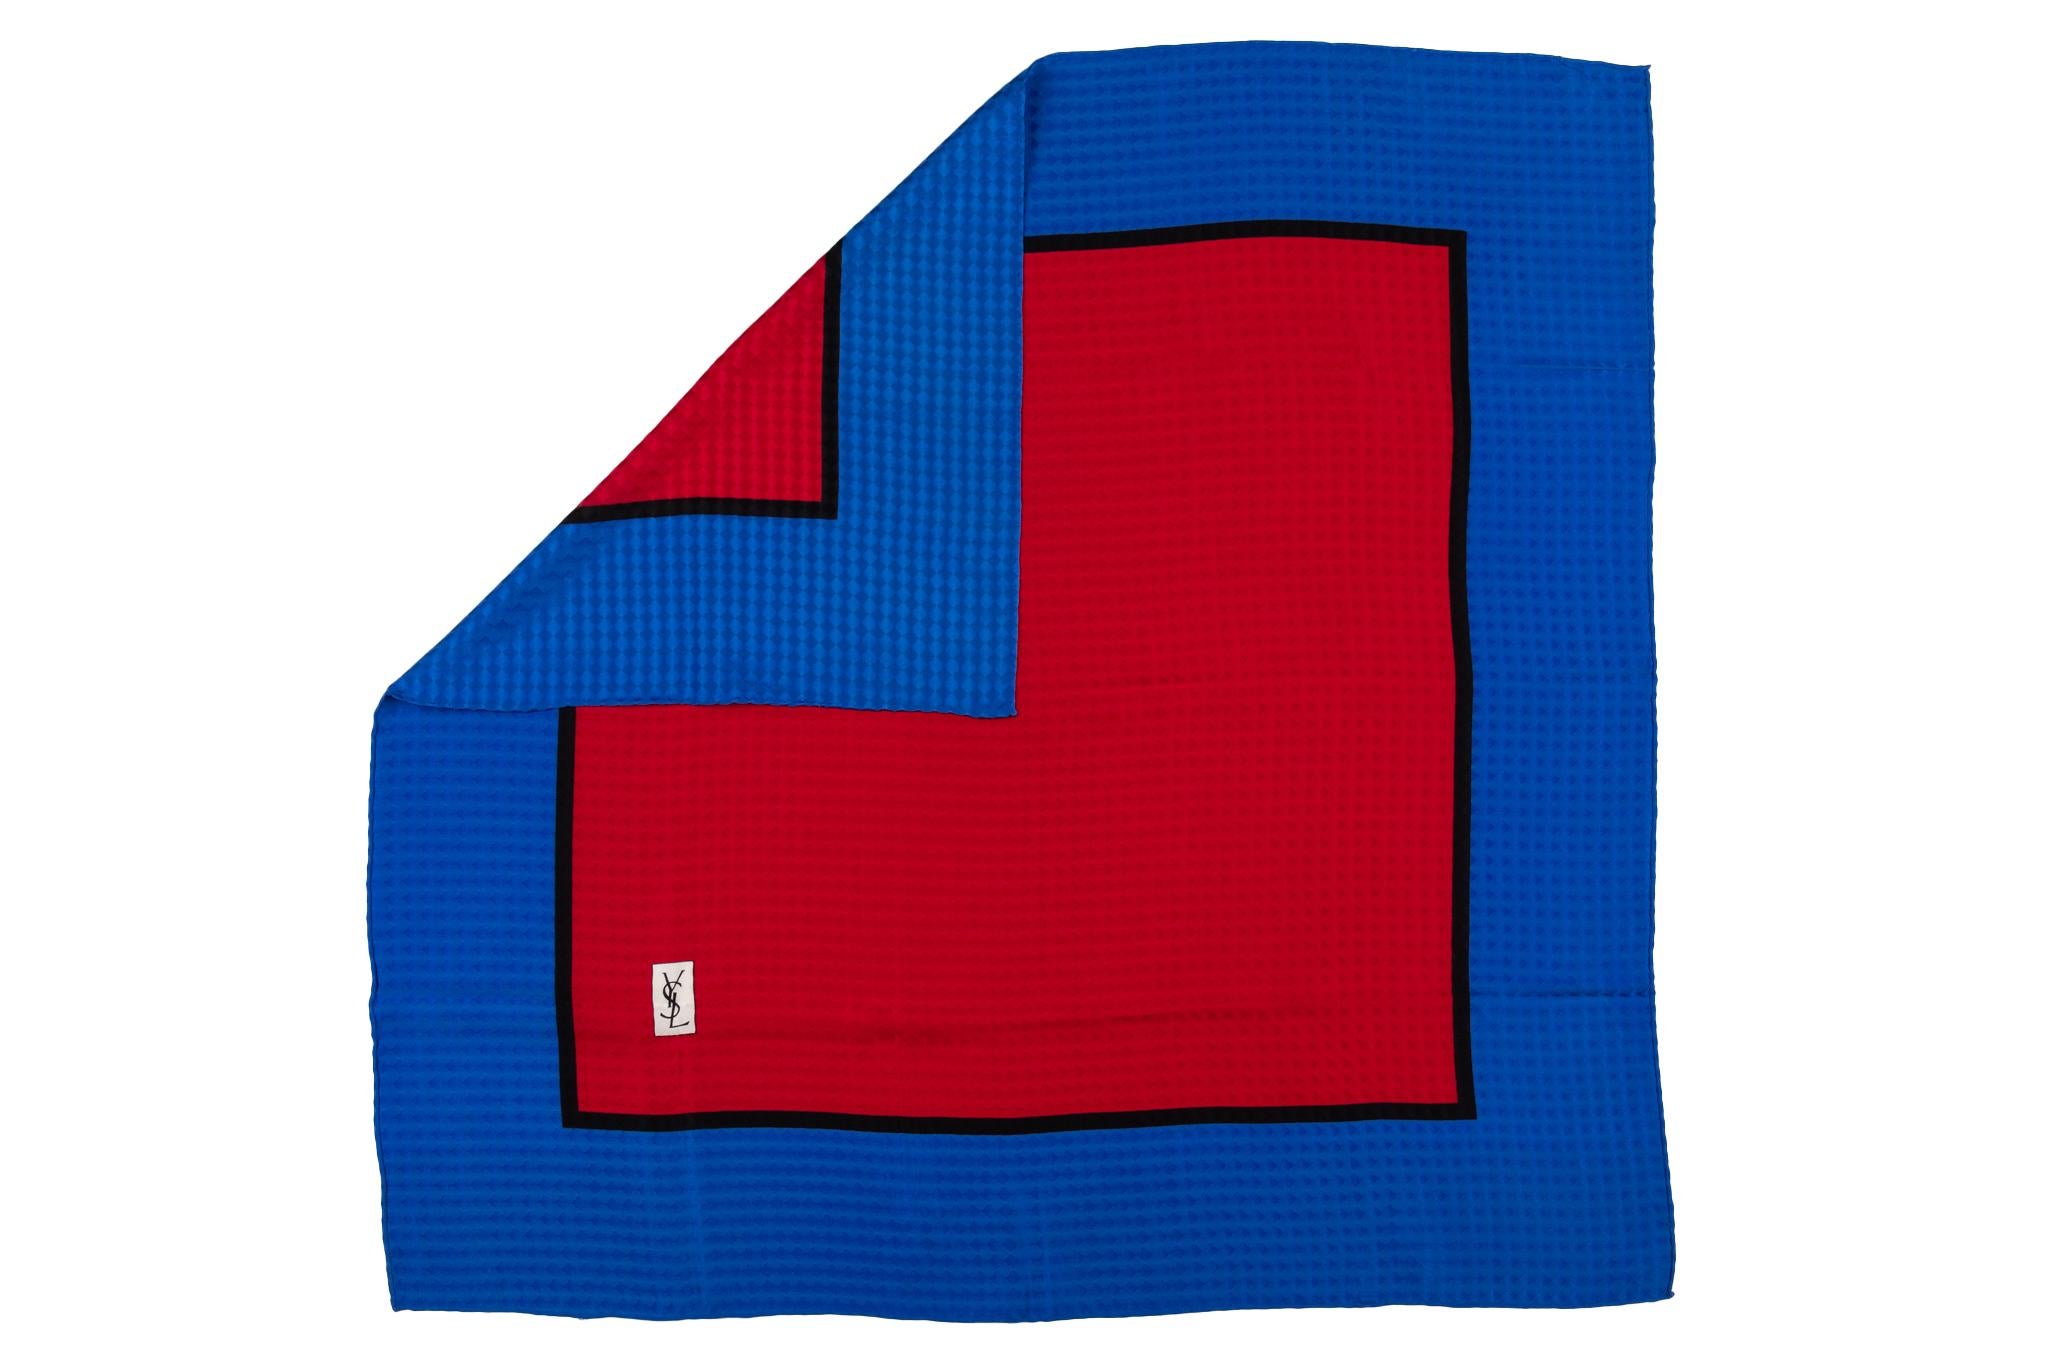 YSL Vintage-Schal aus strukturierter Seide mit Farbblock. Farbkombination aus Rot und Elektroblau.
Keine Box. Kein Label.